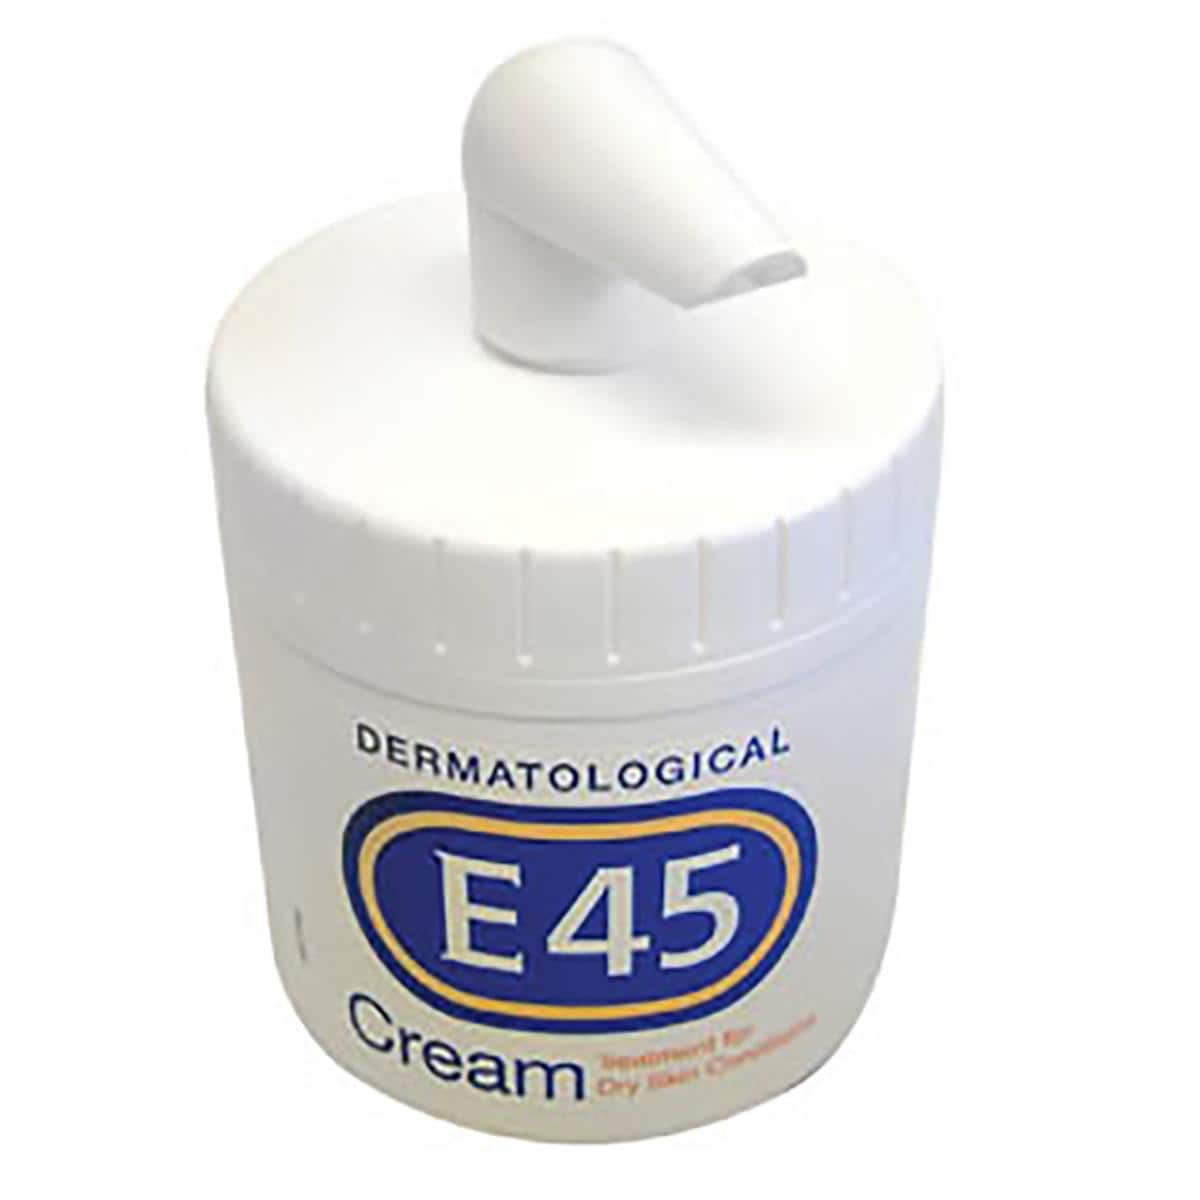 E45 Cream 500g With Pump Dispenser